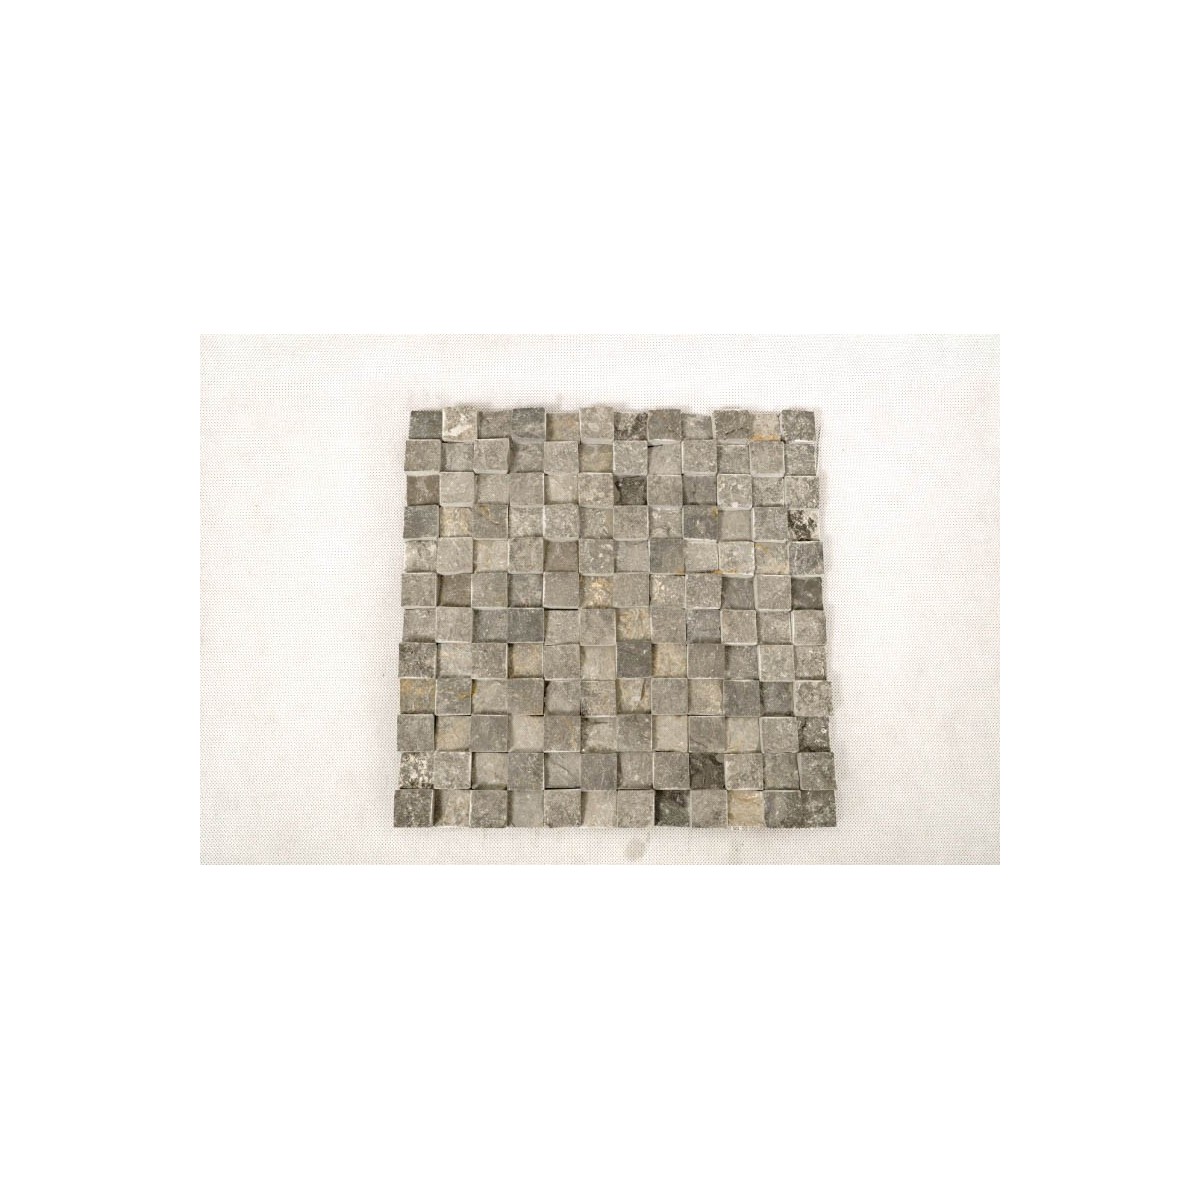 KOSTKA:  * 3D GREY 2x2  mozaika kamienna na siatce INDUSTONE